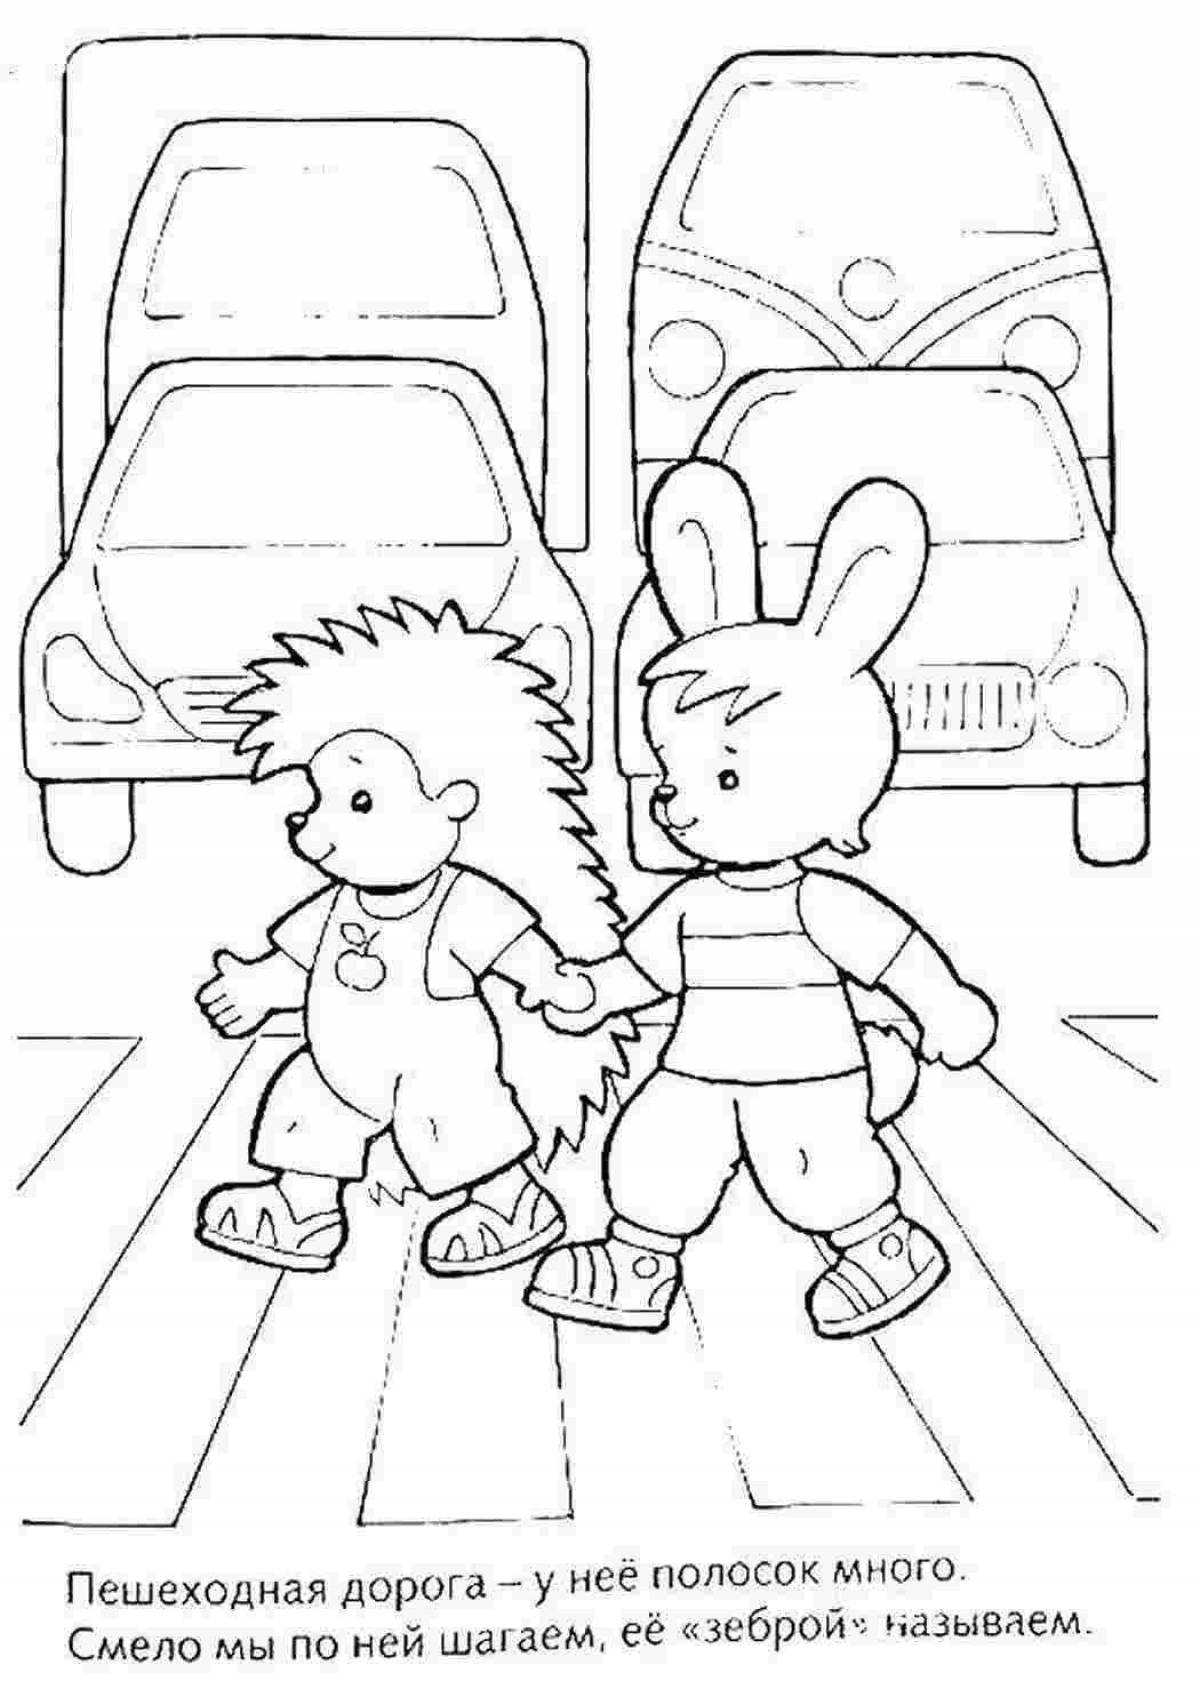 Привлекательная раскраска для правил дорожного движения в детском саду